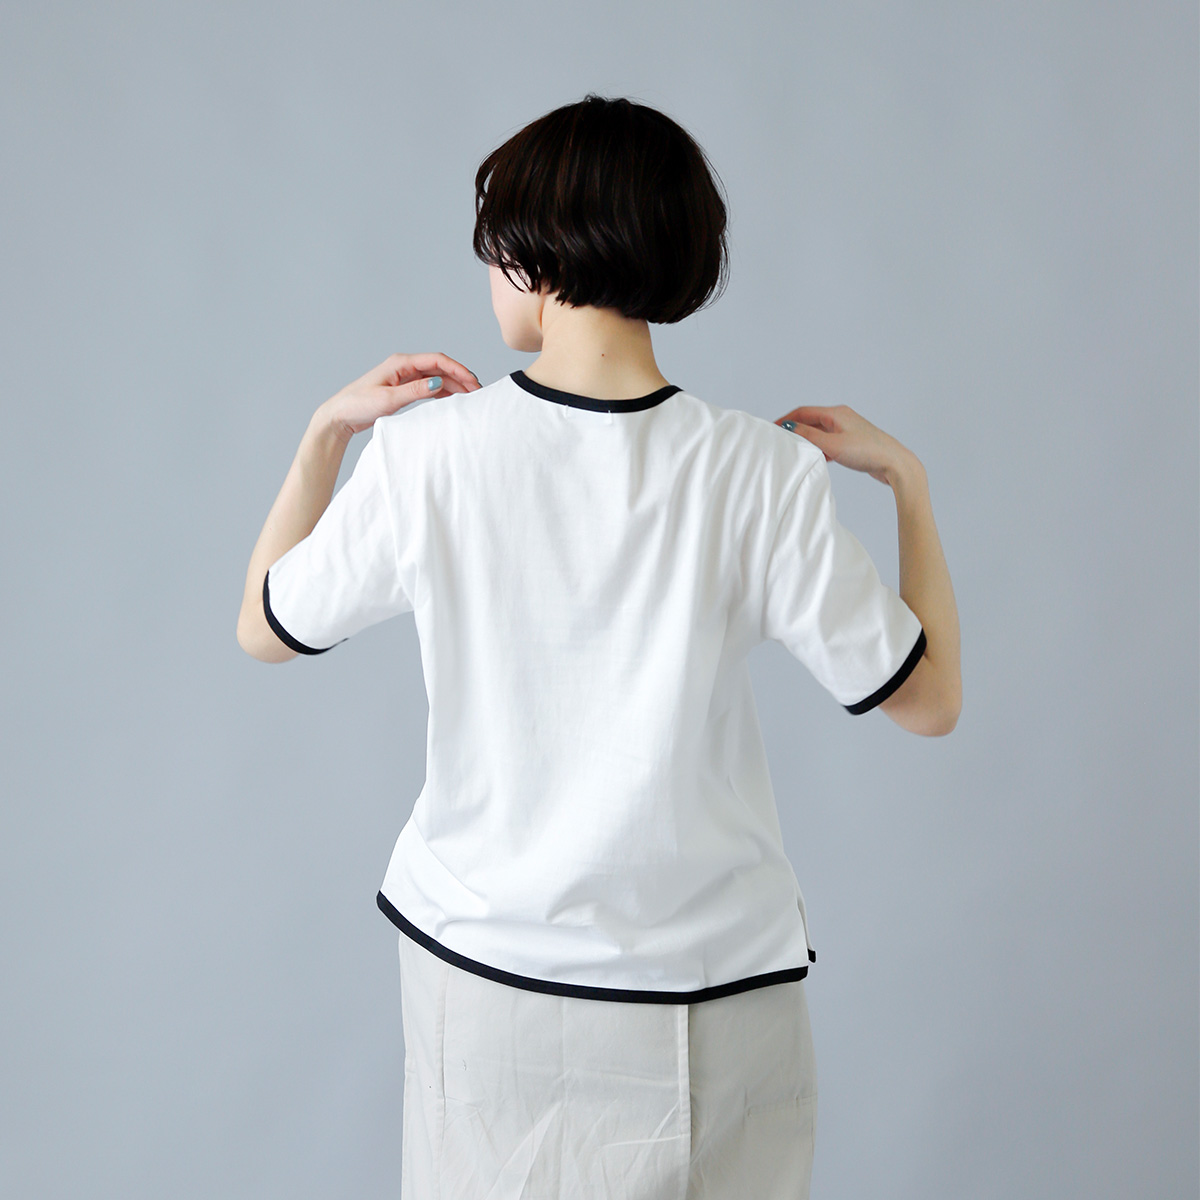 THE HINOKI(ザ ヒノキ)オーガニックコットンベーシックリンガーTシャツ th21s-33-bk